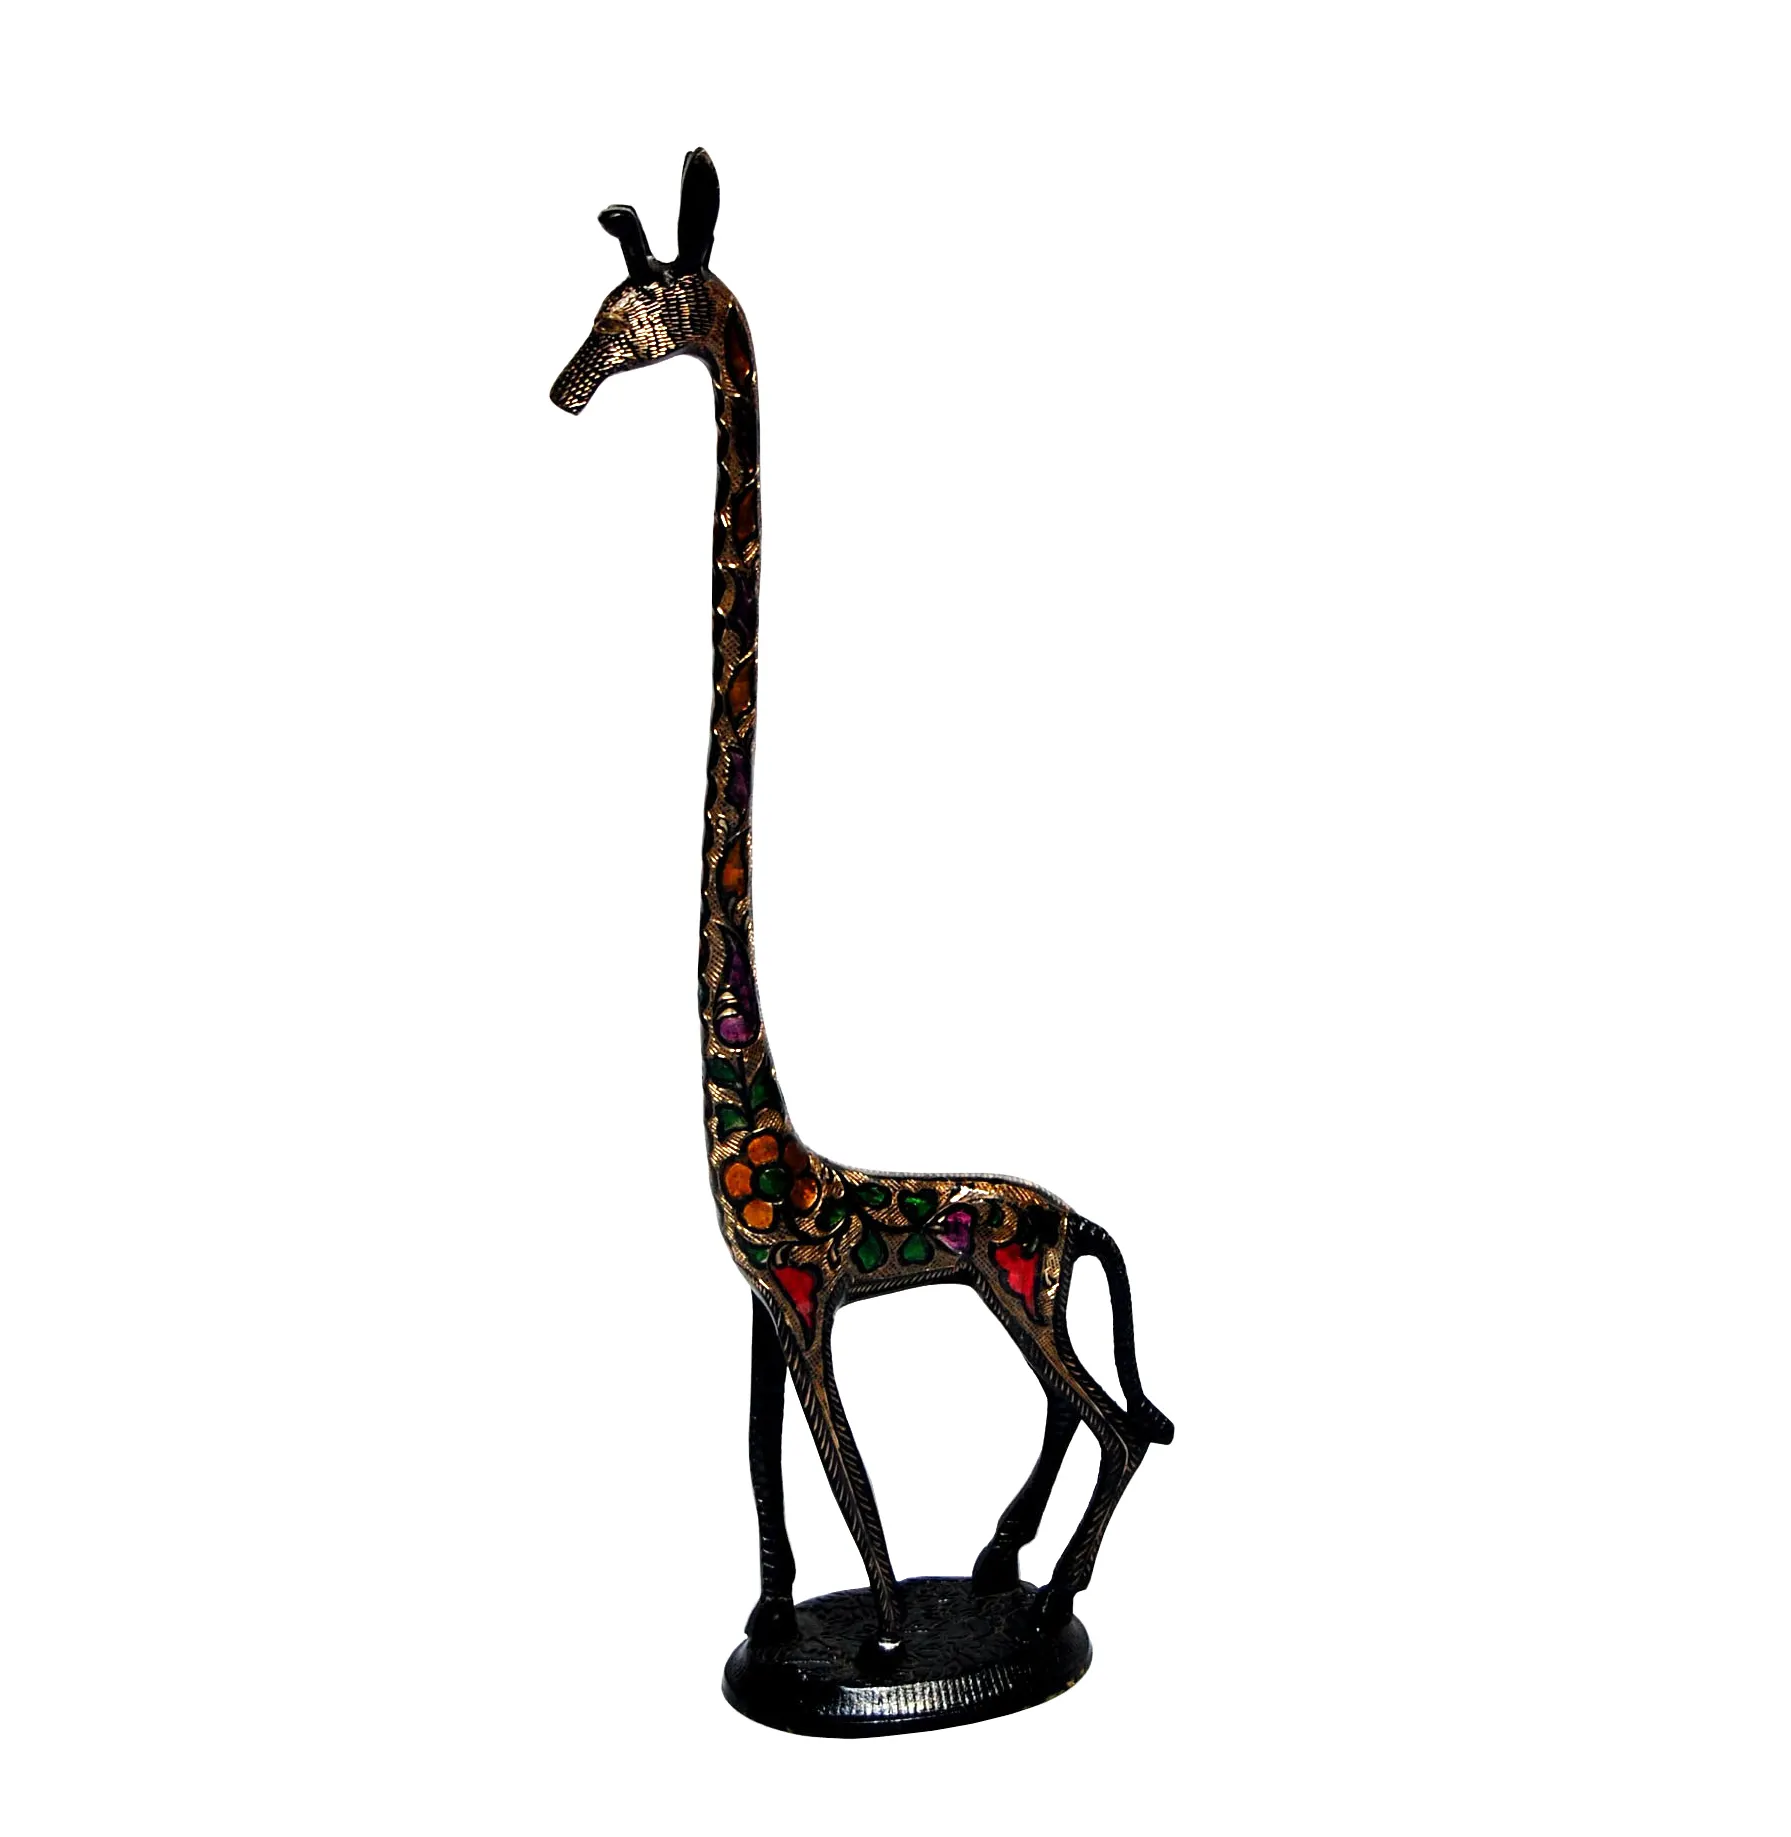 Casa Decorativo Giraffa Statua con Fatto A Mano Modello di Disegno con In Ottone Giraffa Uso per la casa e Giardino Statua Decorativa